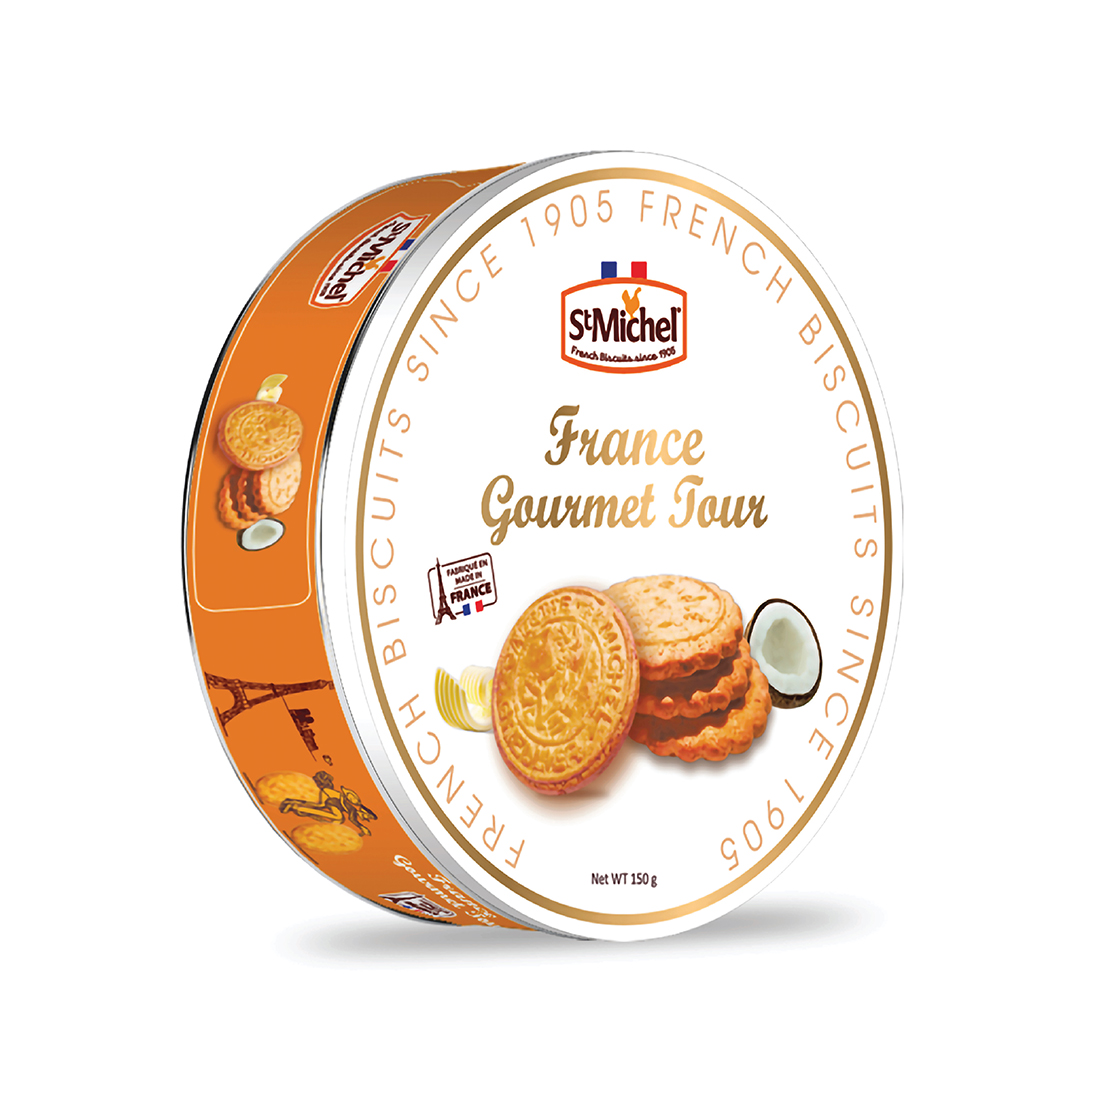 Bánh quy bơ St Michel France Gourmet tour 150g